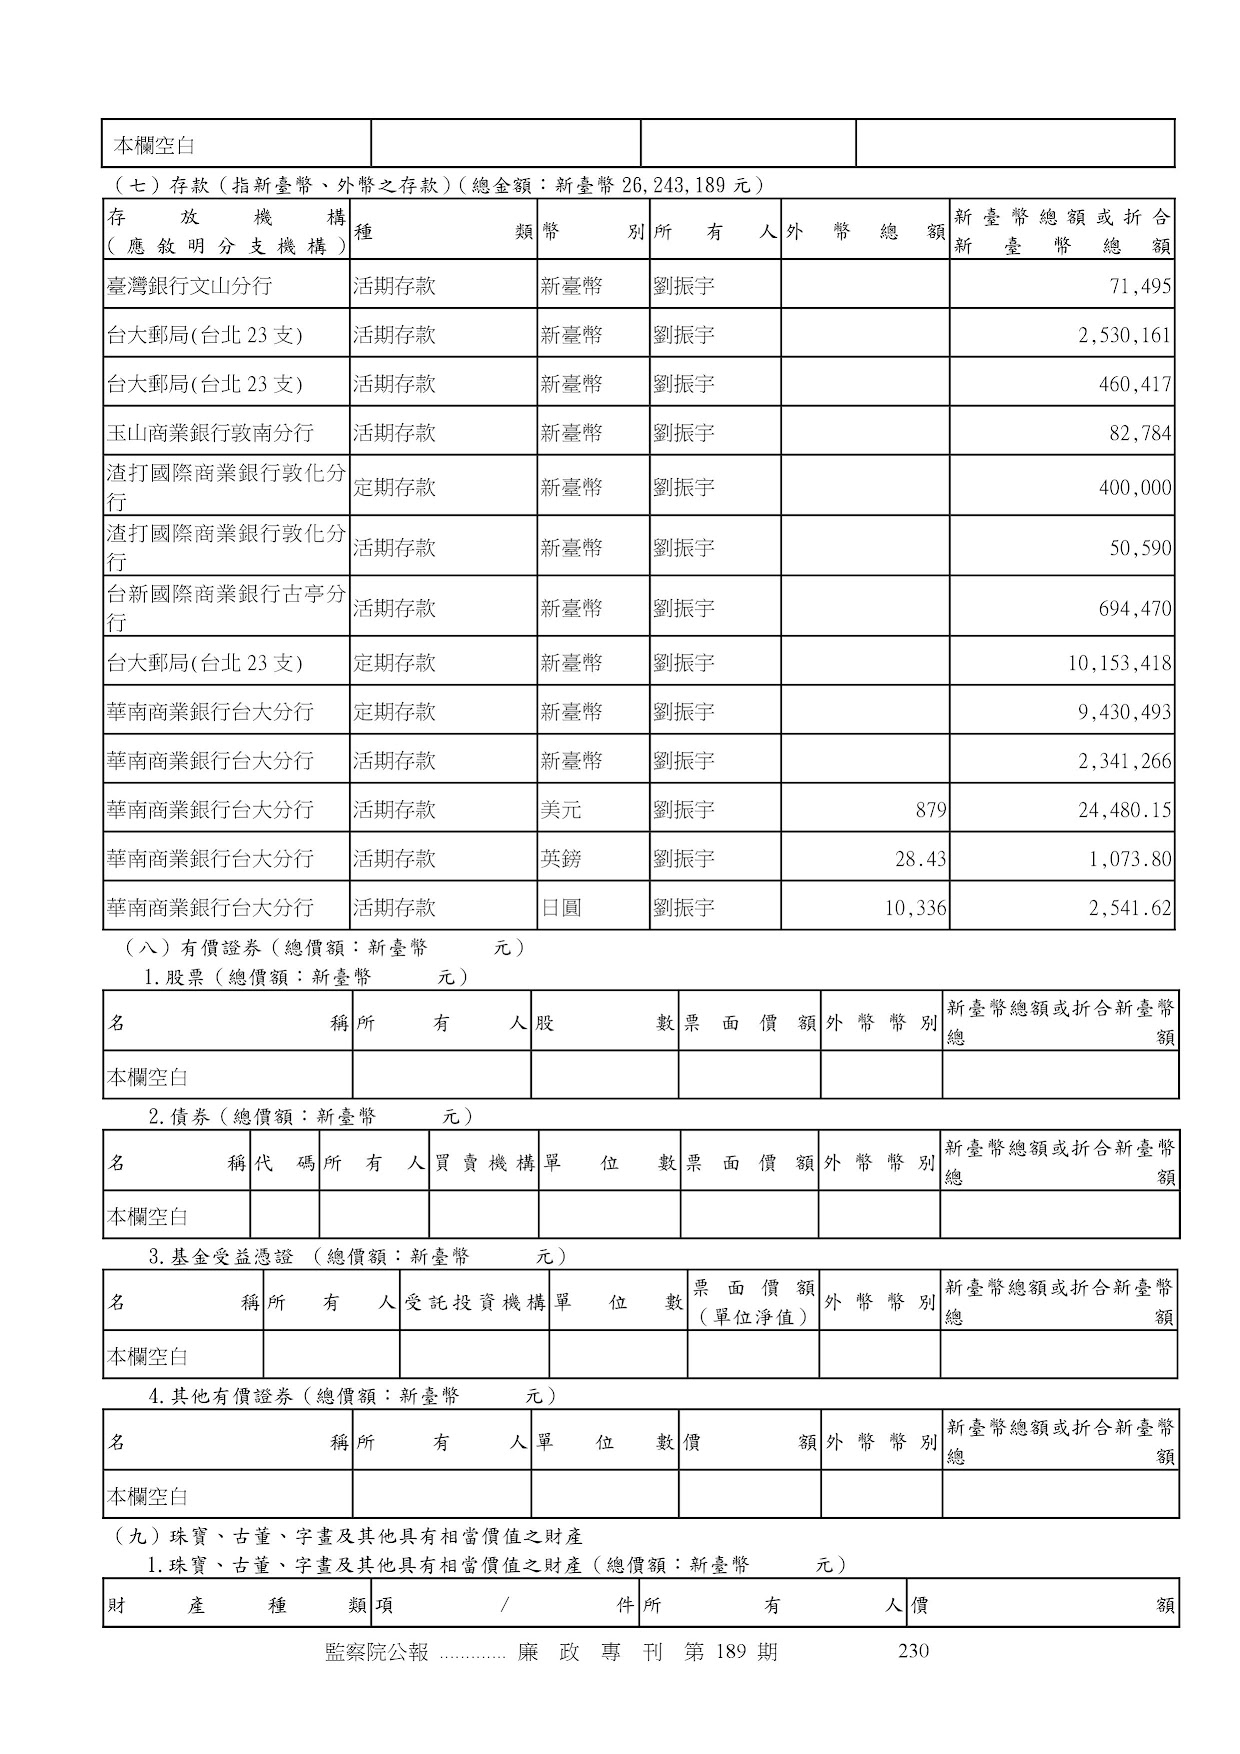 劉振宇-公職人員財產申報資料-廉政專刊第189期